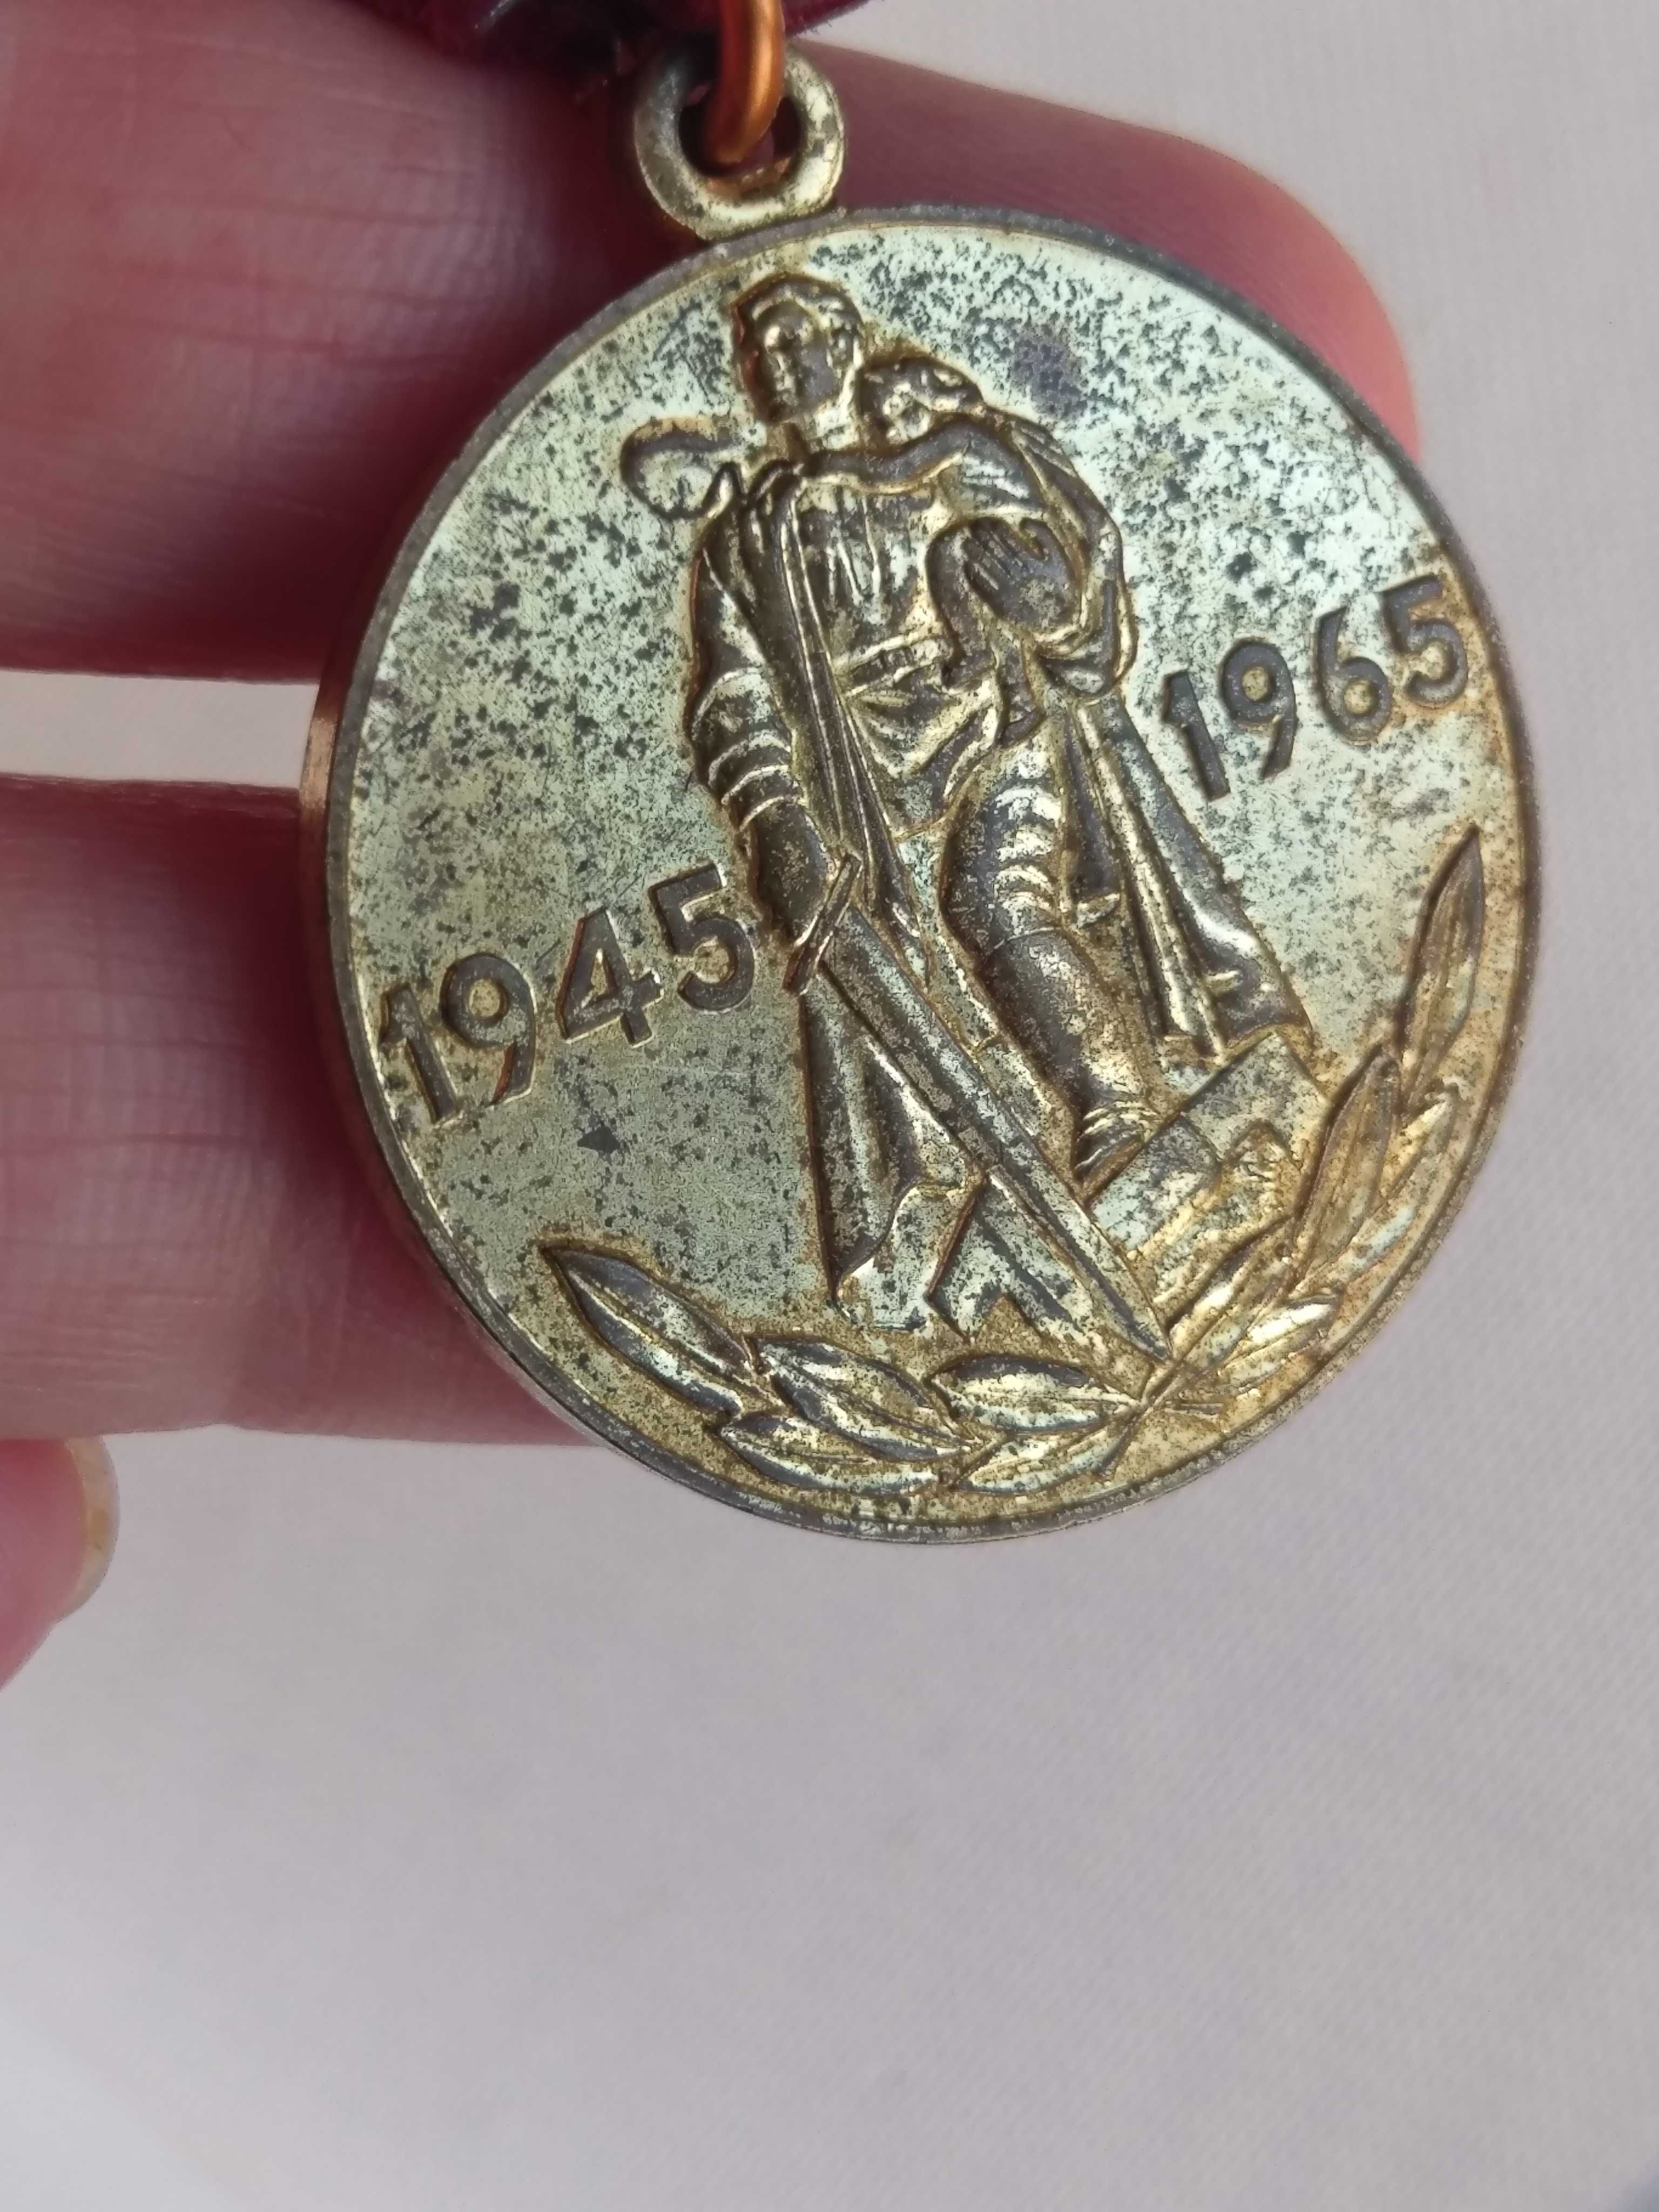 Медал СССР 20, 30 и 40 години Победа 1941-1945